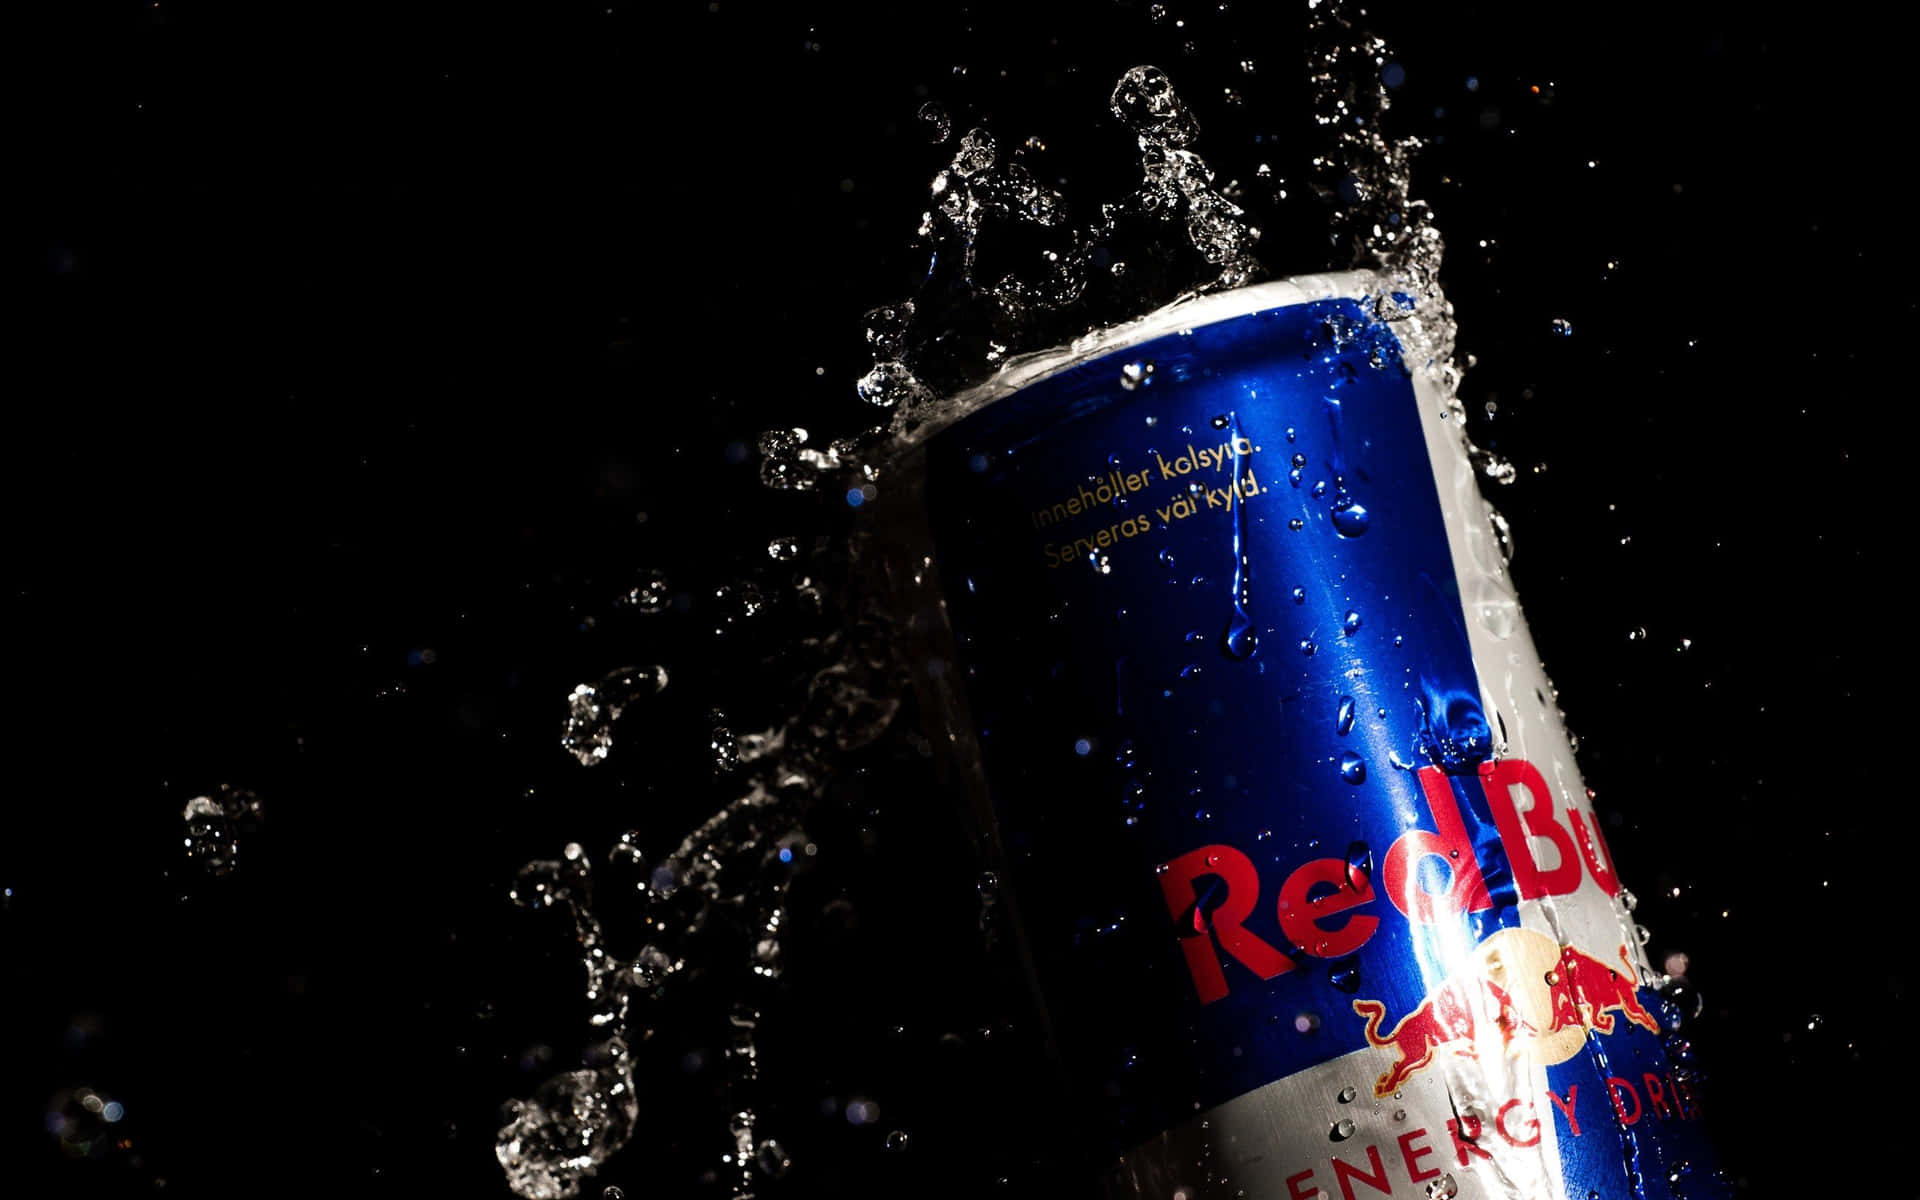 Erreichedeinen Energiehöhepunkt Mit Red Bull